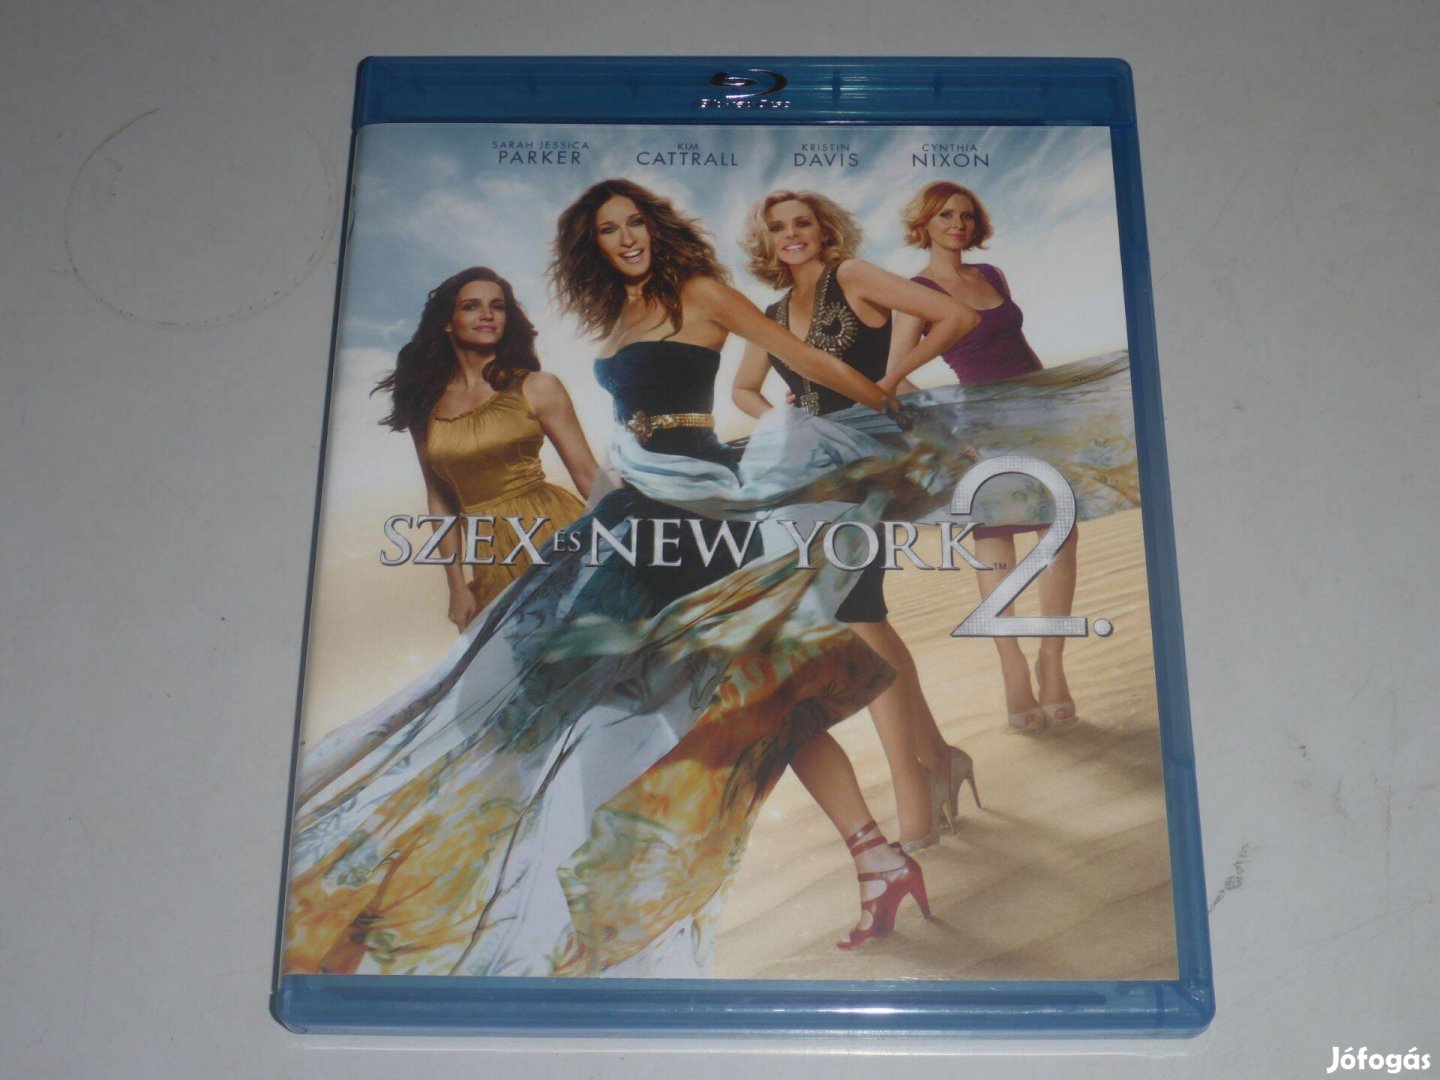 Szex és New York 2. blu-ray + DVD film